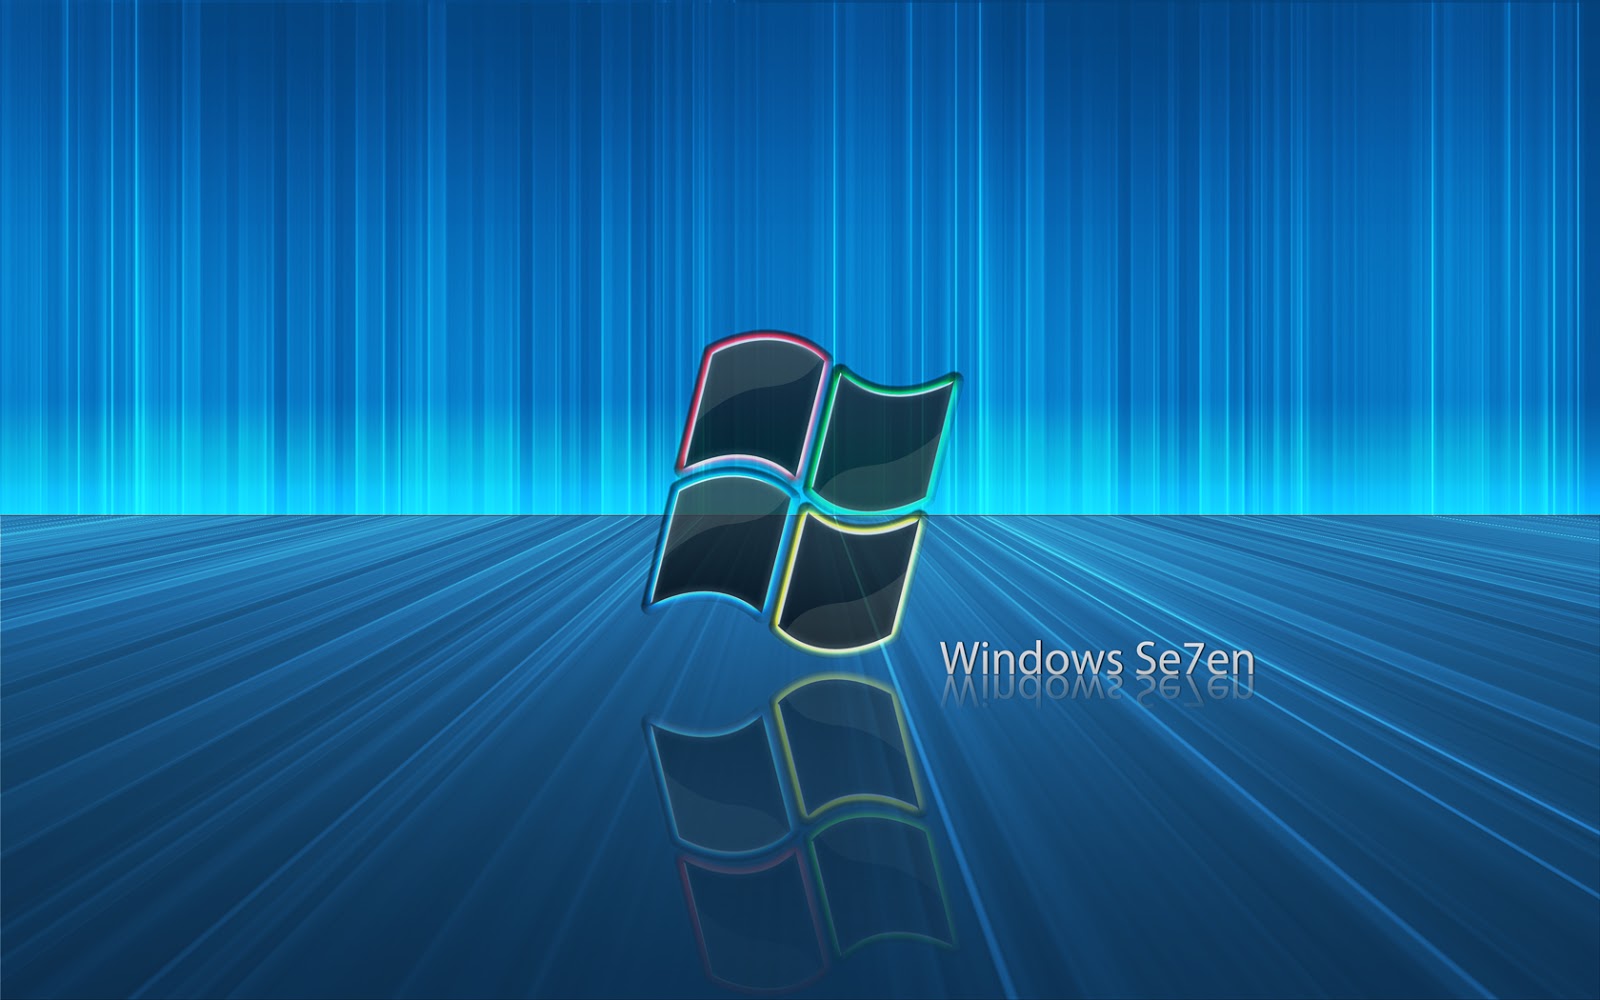 Bạn đang sử dụng Windows 7 hoặc Windows 8? Hãy tải ngay miễn phí hình nền đẹp mắt để thay đổi không khí trên desktop của mình. Bạn sẽ cảm thấy thích thú với việc sở hữu những hình nền chất lượng cao như vậy. Hãy đến với chúng tôi để khám phá thêm nhiều hình nền đẹp khác nhau.